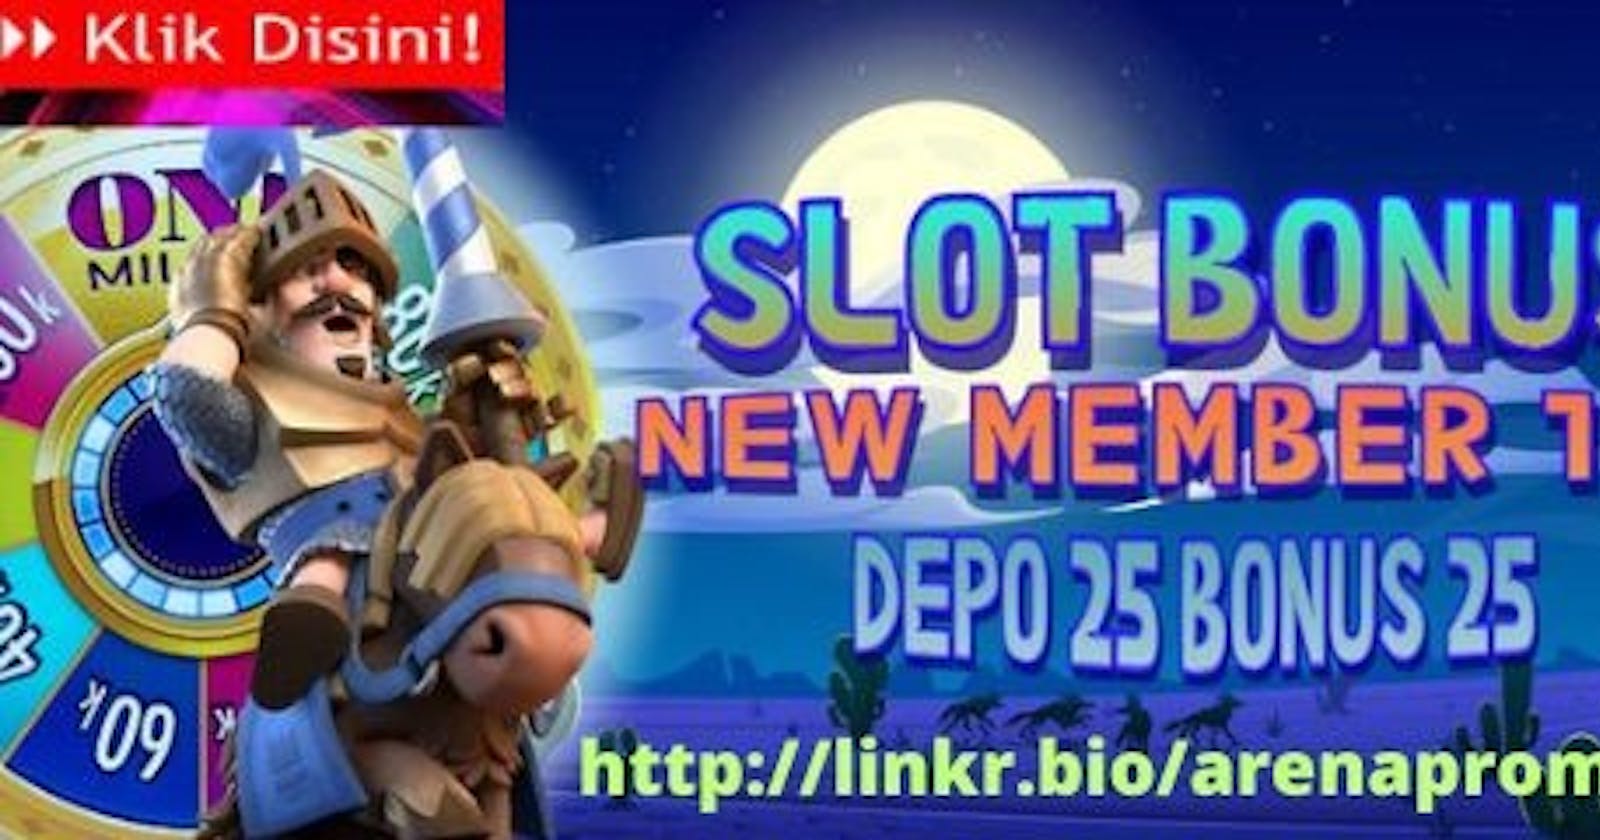 Slot Depo 25 Bonus 25 > Slot Bonus New Member 100 To 3x 5x Di Awal Depan Bebas Ip Tanpa Syarat